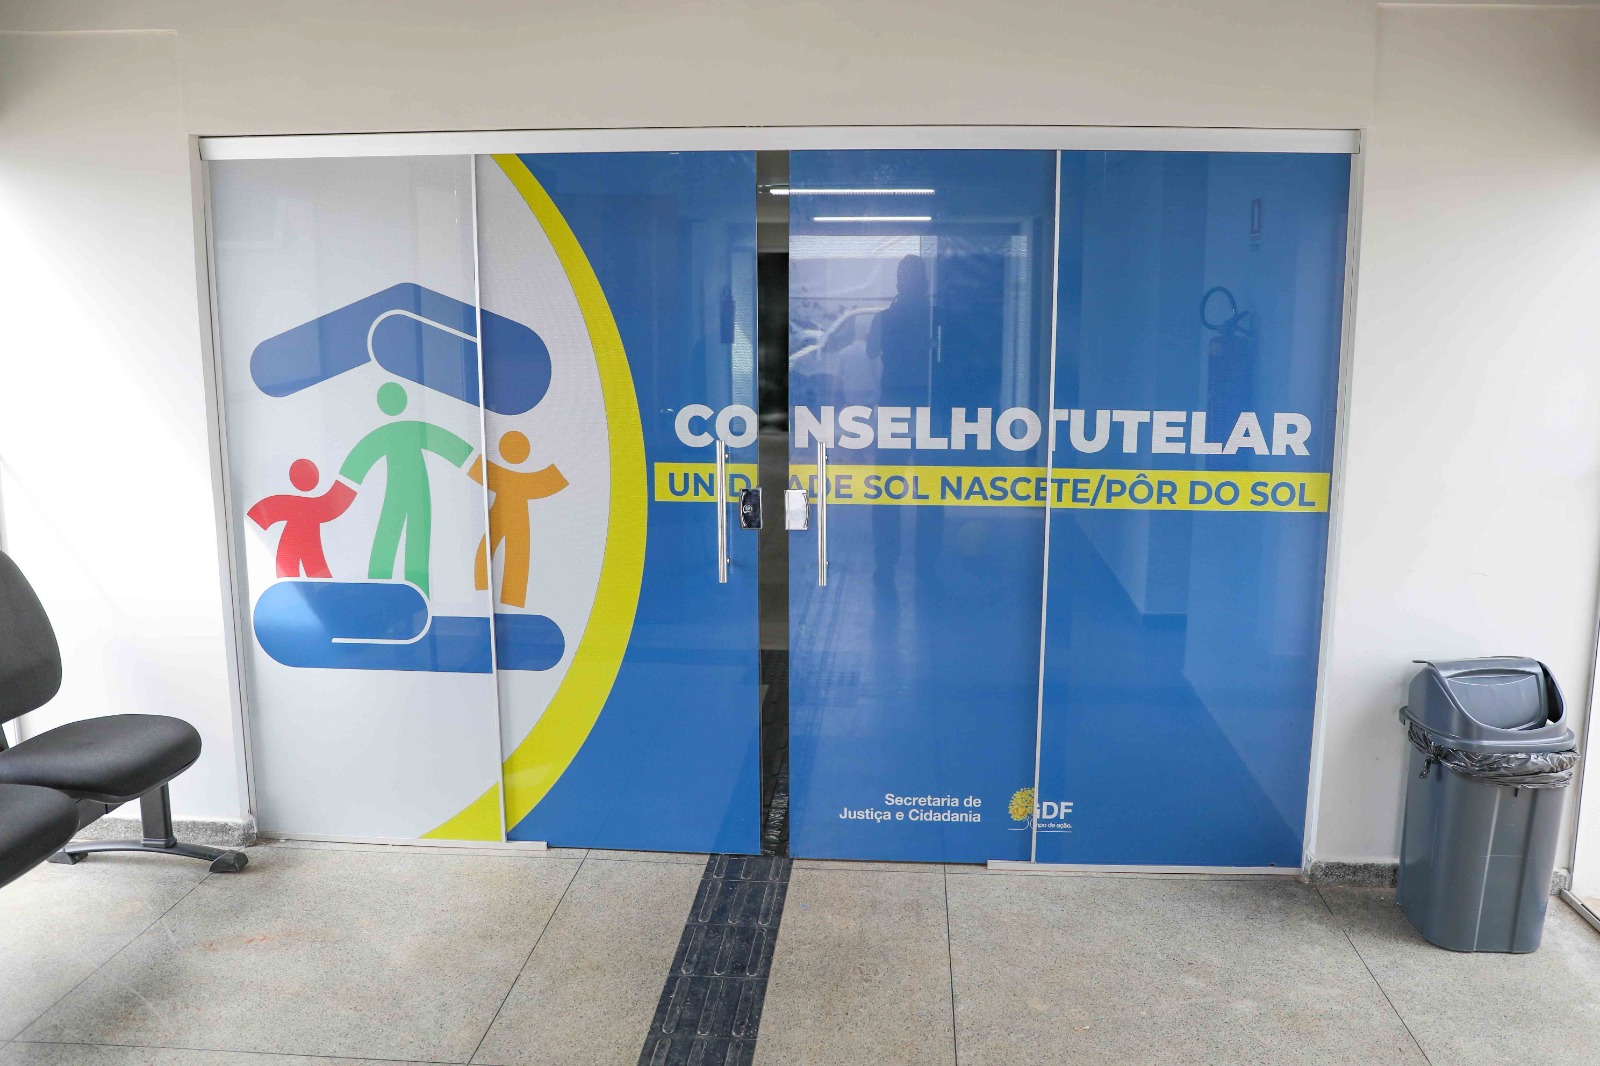 Candidatos ao Conselho Tutelar devem fazer a verificação entre os dias 18 e 20 deste mês | Foto: Renato Alves/Agência Brasília